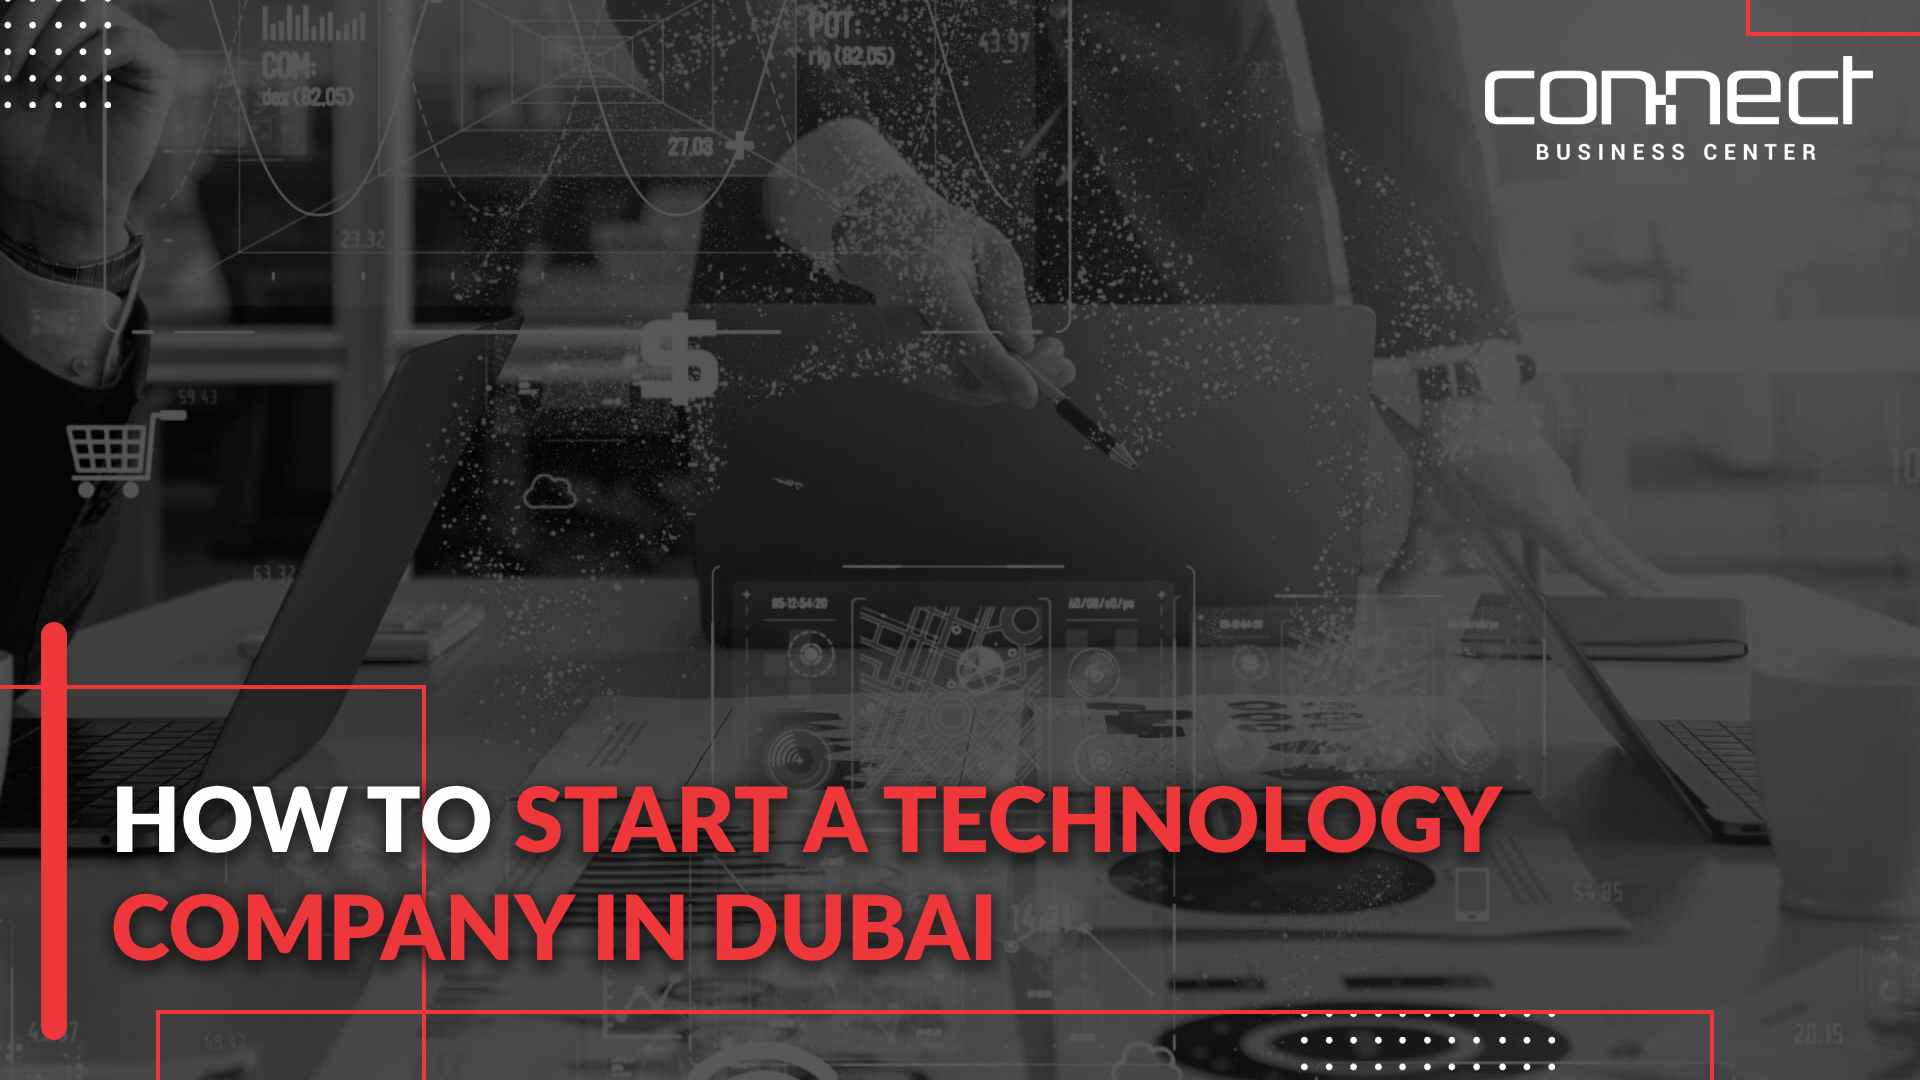 Start a technology company in Dubai